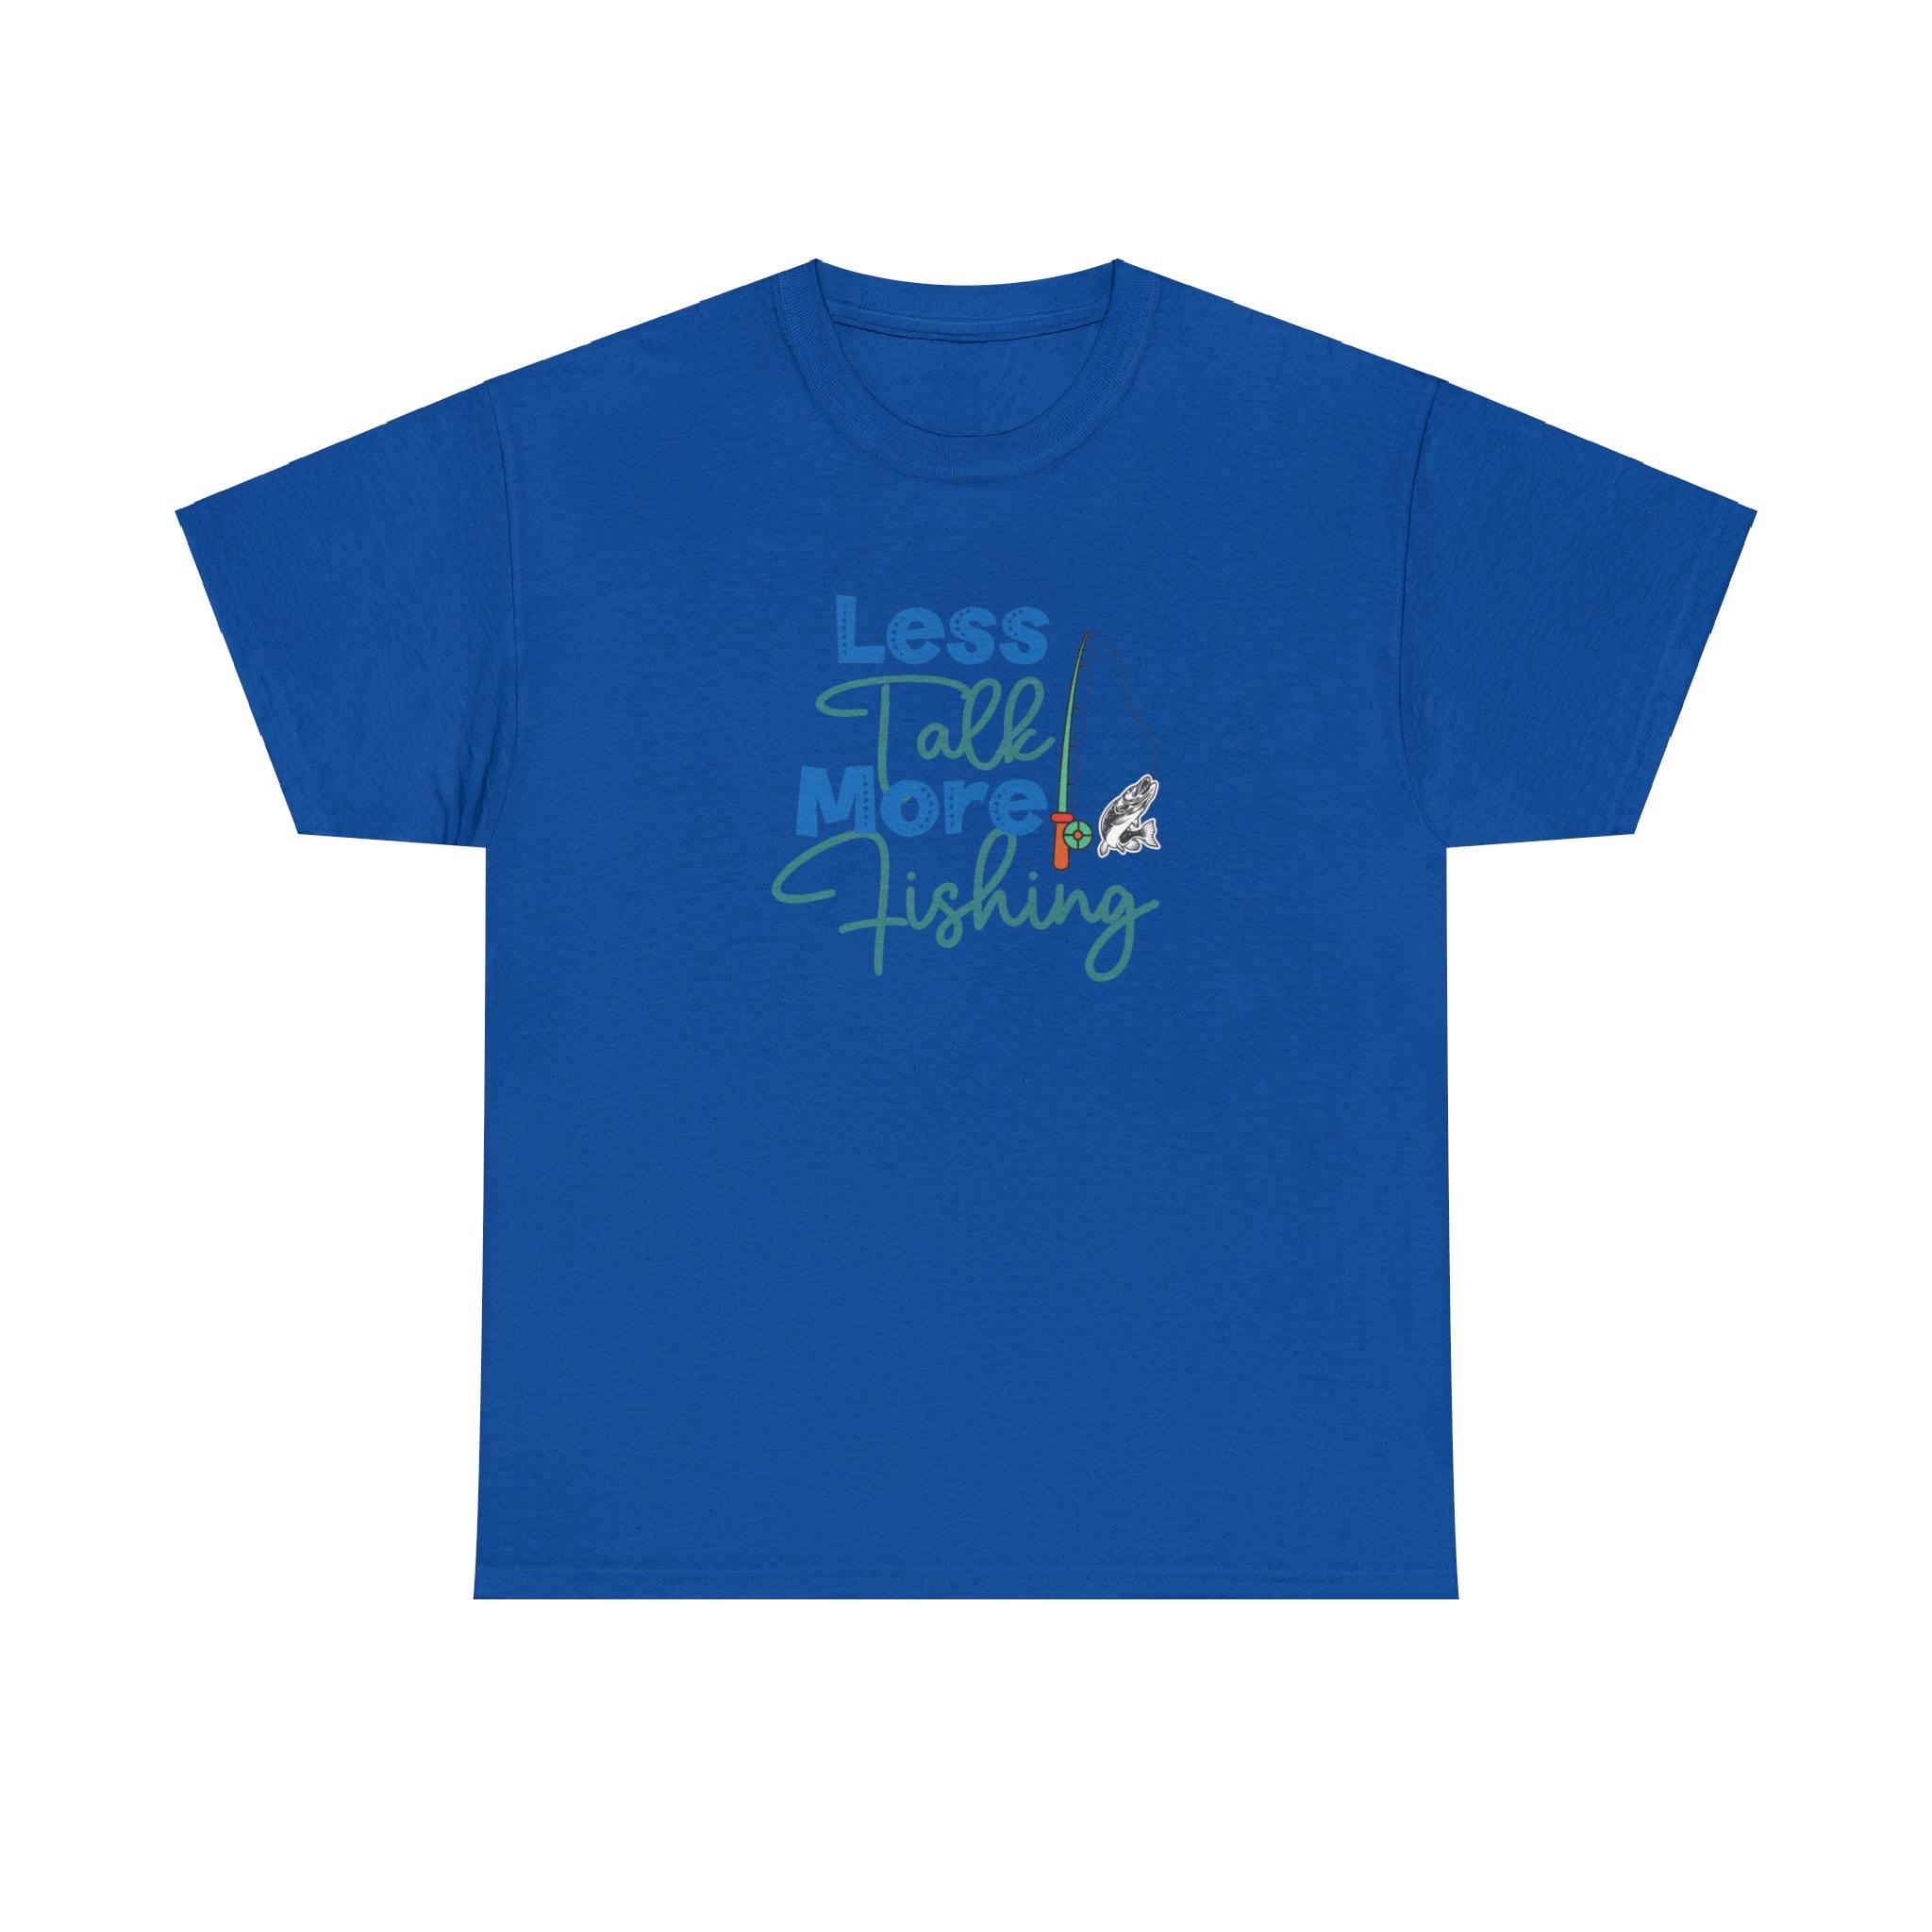 Fishing Shirt Fishing Shirt Sales Fishing Shirt Brands Boys Fishing Shirt 